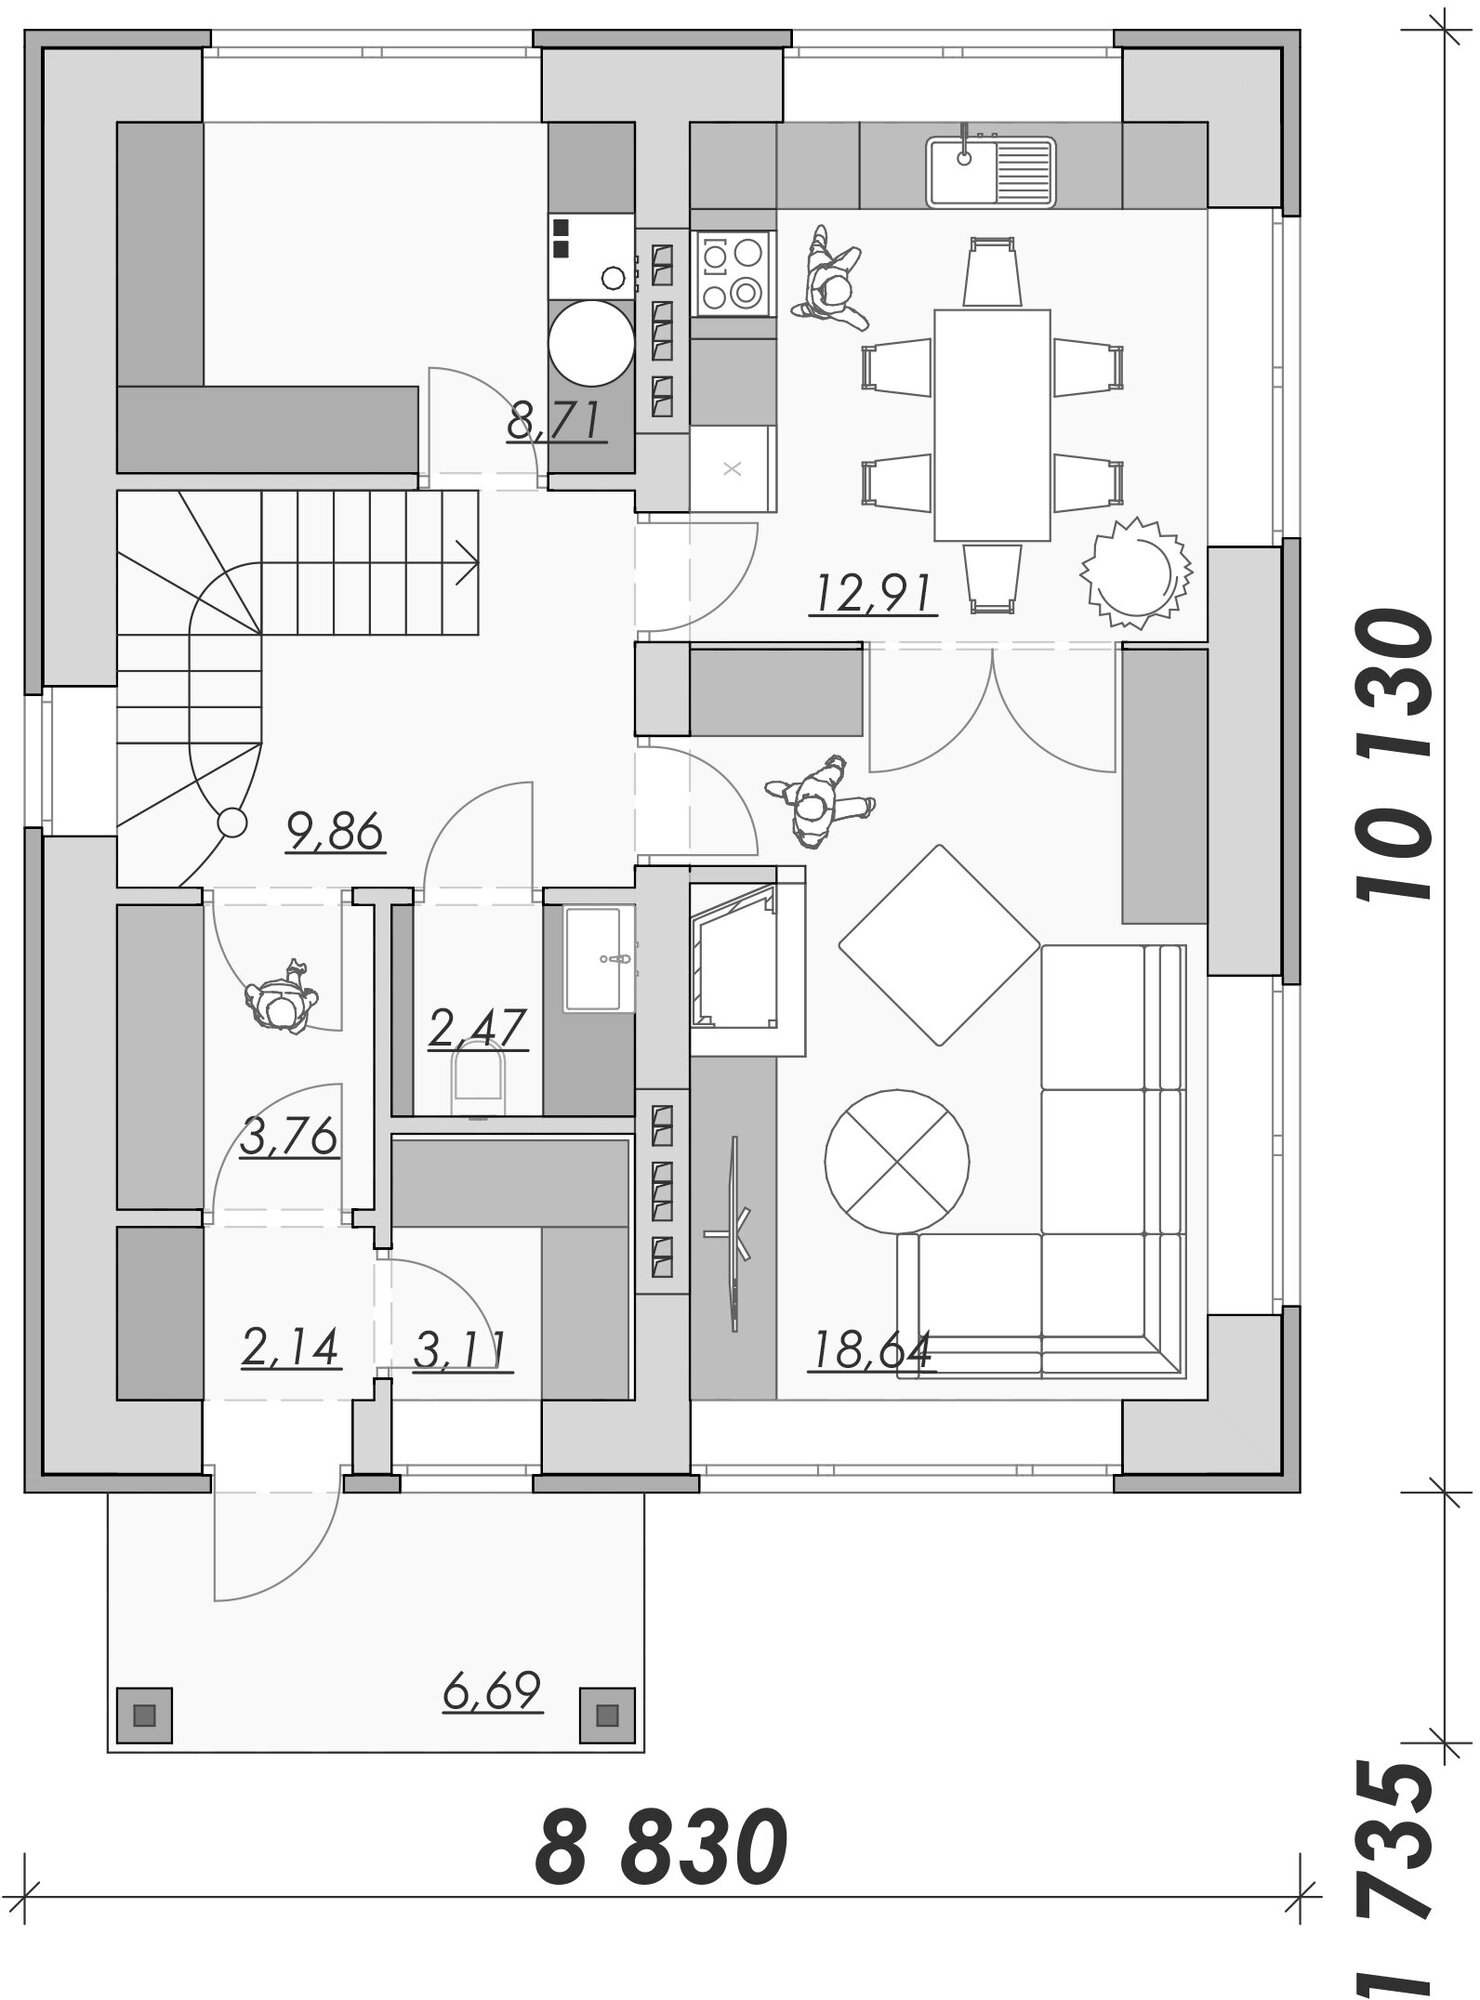 Проект дома в классическом стиле из кирпича, 3 спальнями, раздельными кухней и гостиной, выделенной котельной с прачечной - фотография № 2